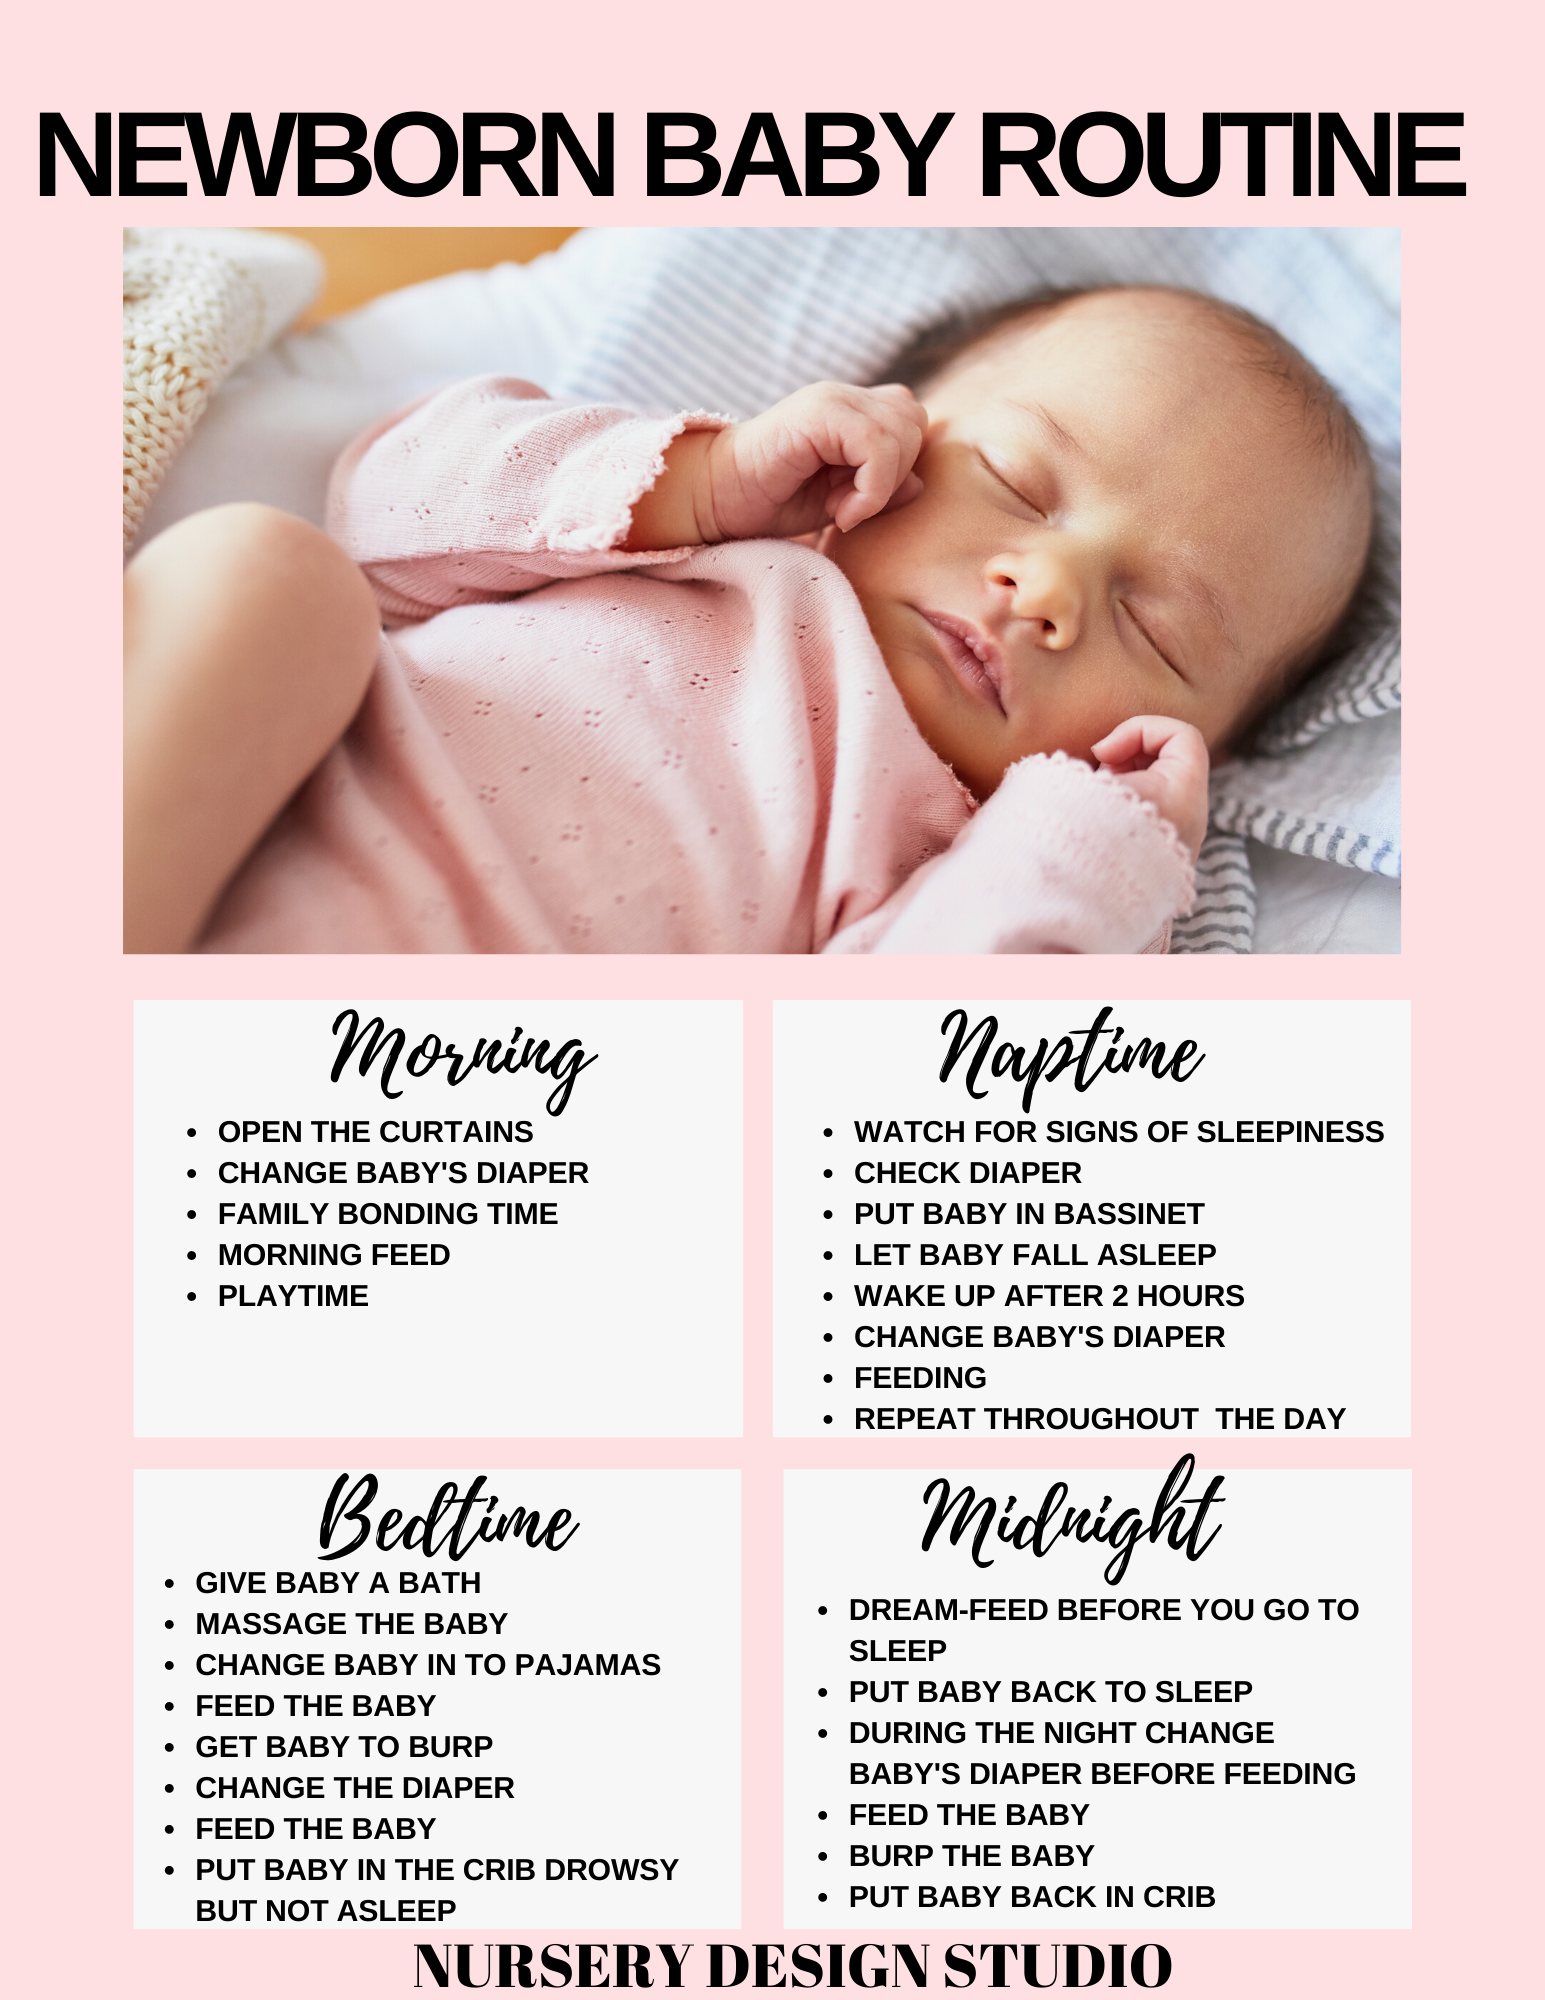 When Do Babies Develop A Sleep Routine?